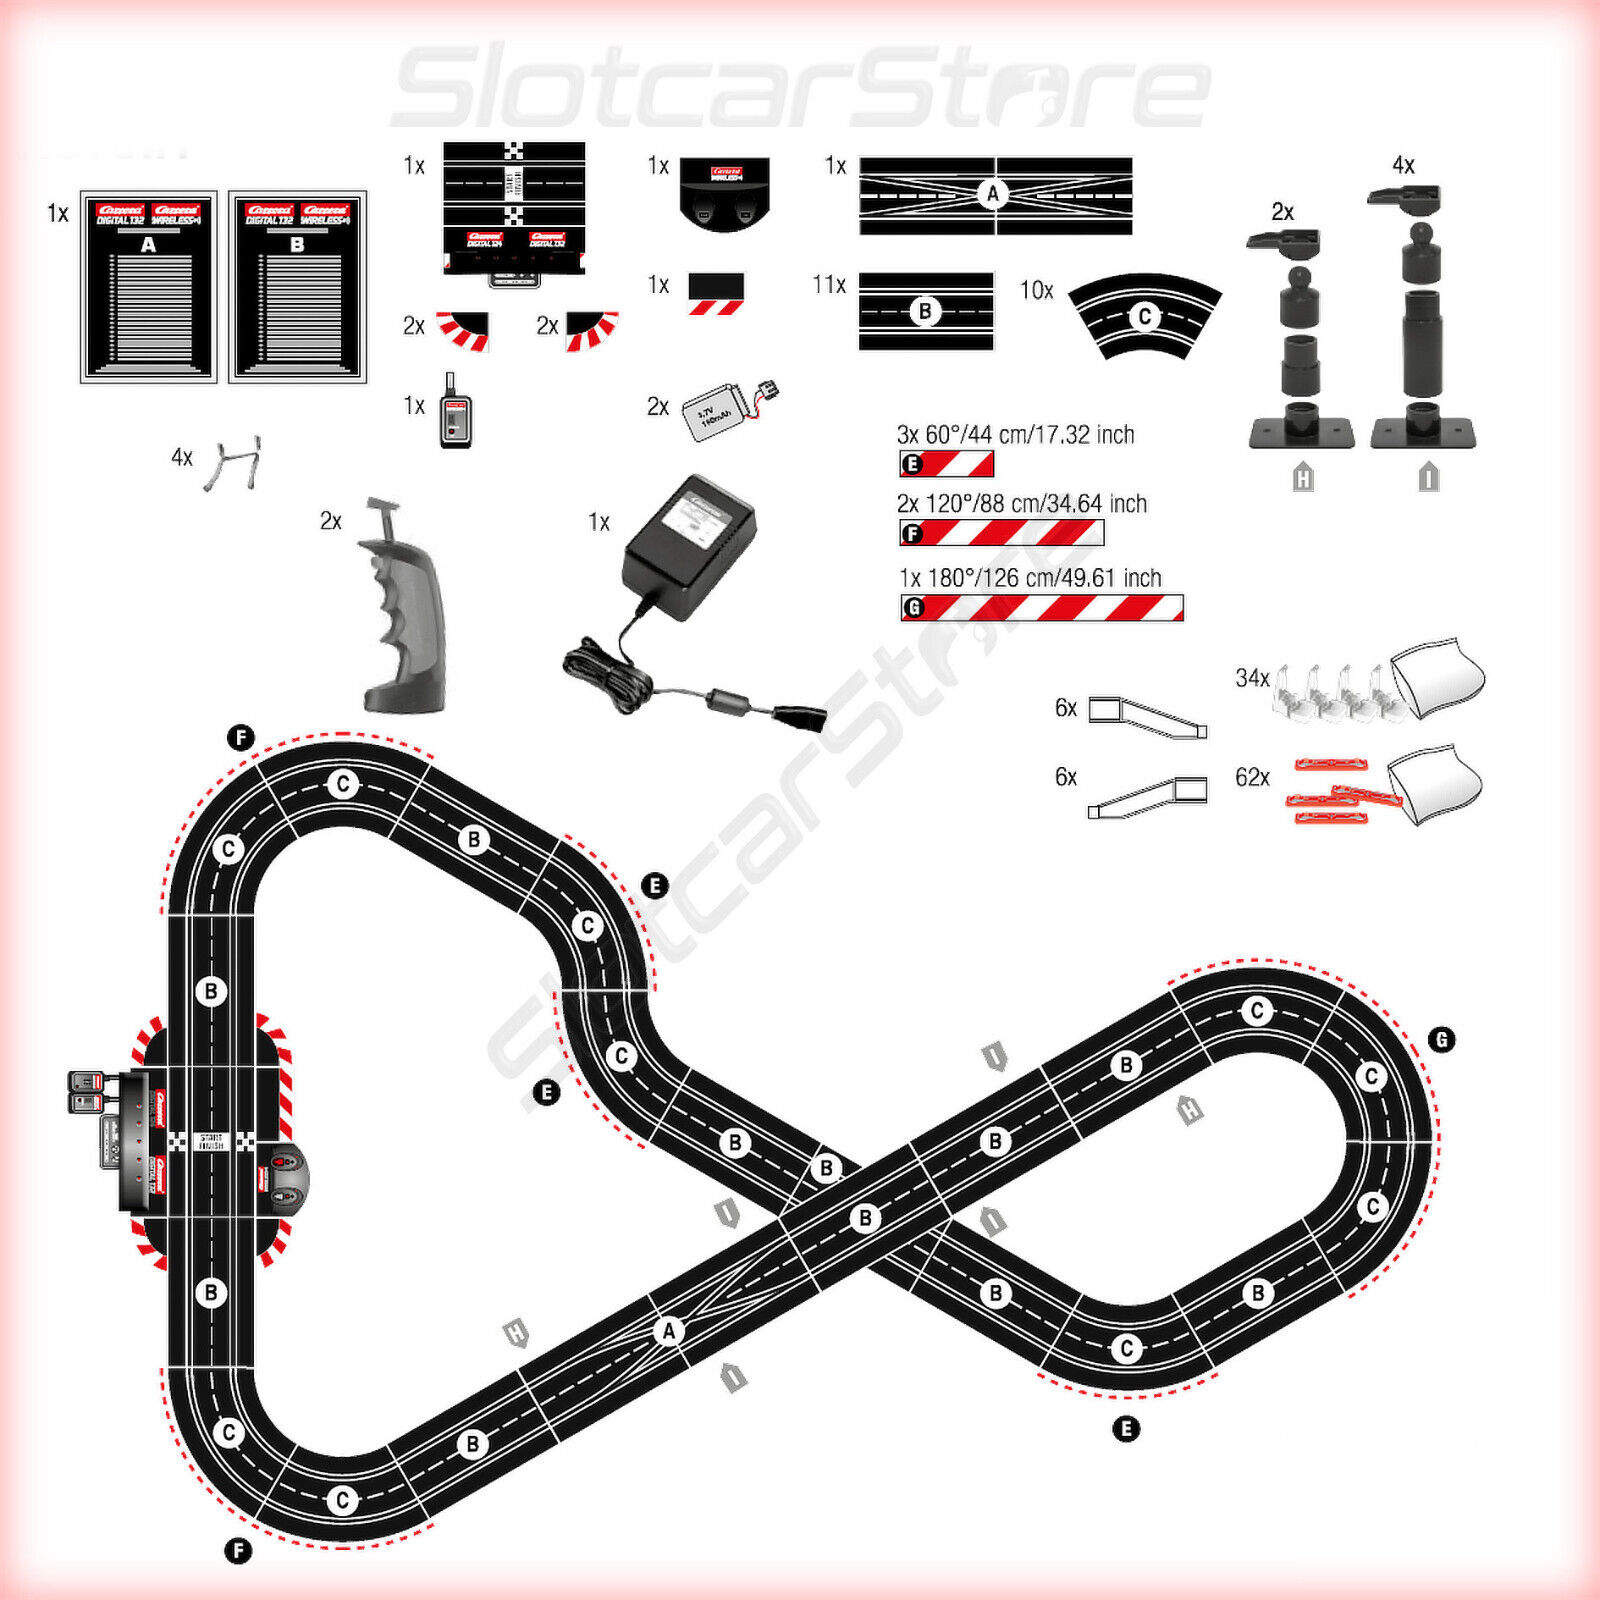 Circuit Carrera Digital 132 Asphalt Masters - 20030017 - Circuit